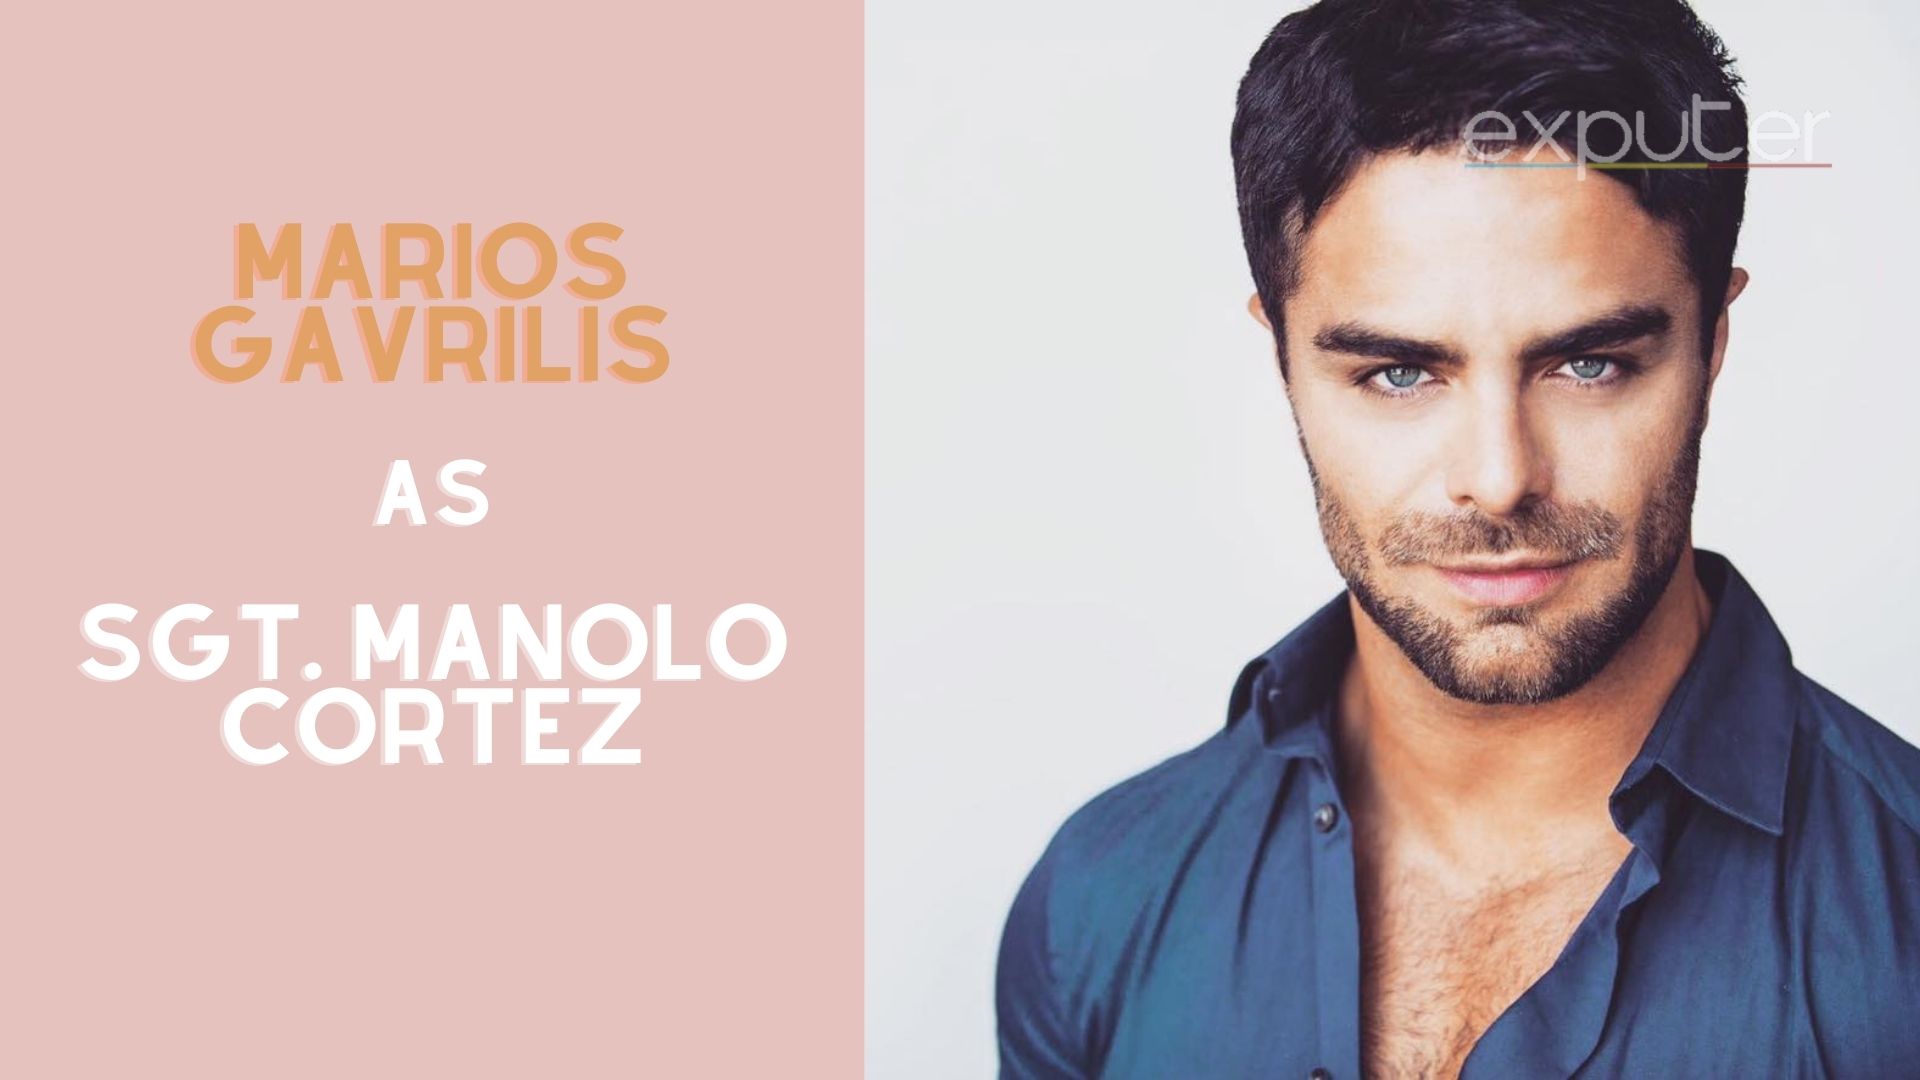 Voice actor sgt. Manolo Cortez, Marios Gavrilis.